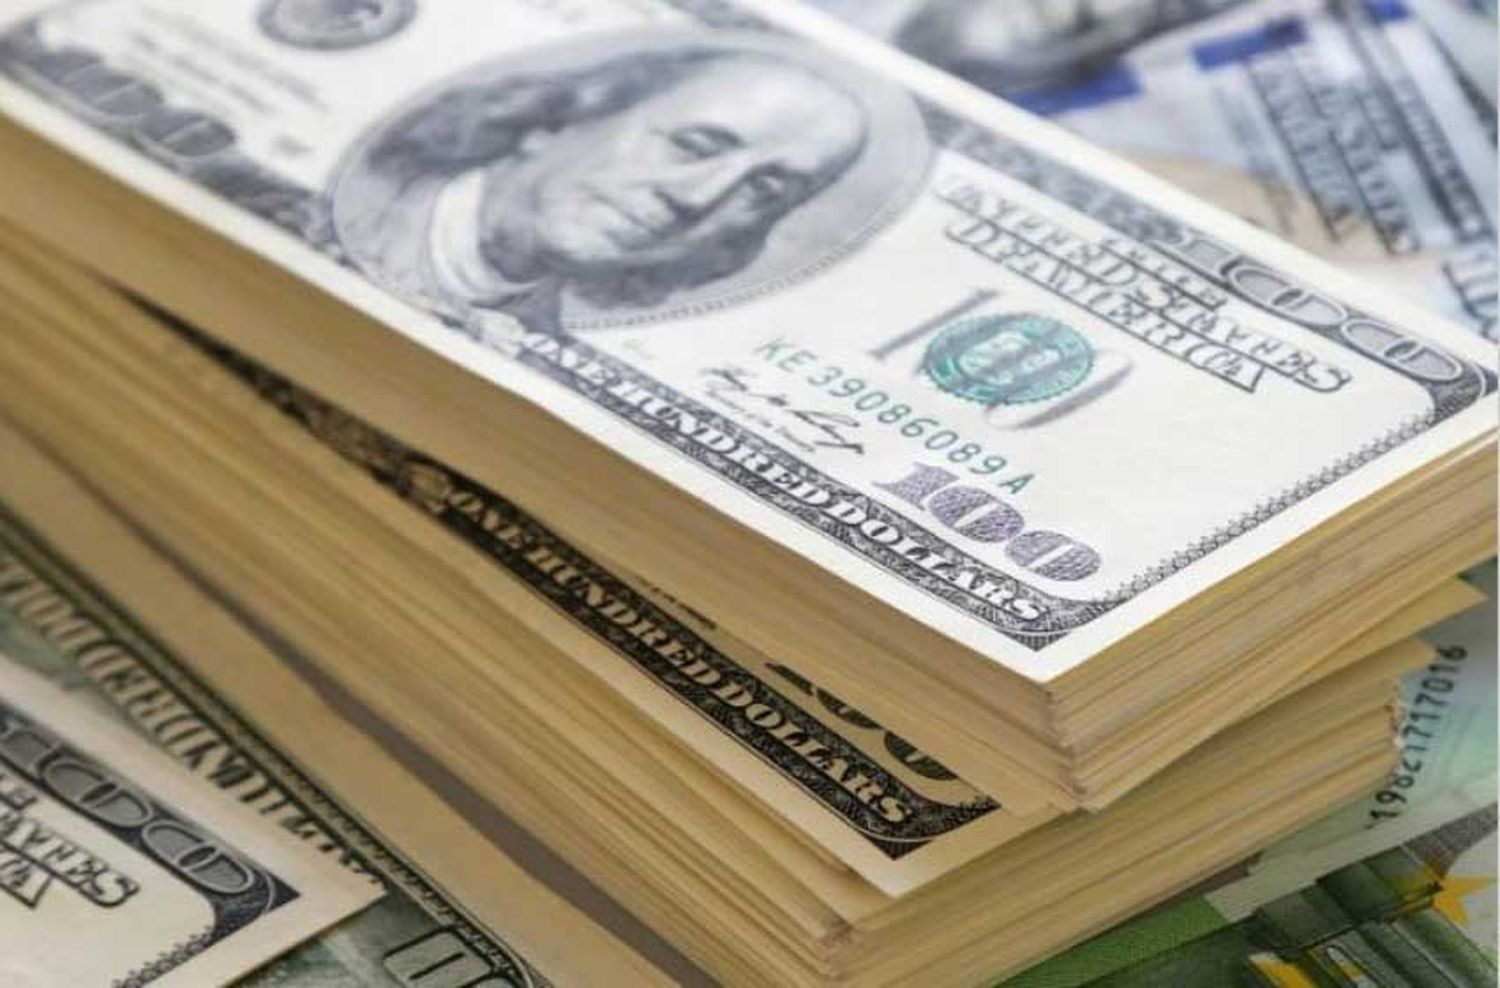 El dólar blue llegó a $1400 y rompió un nuevo récord nominal